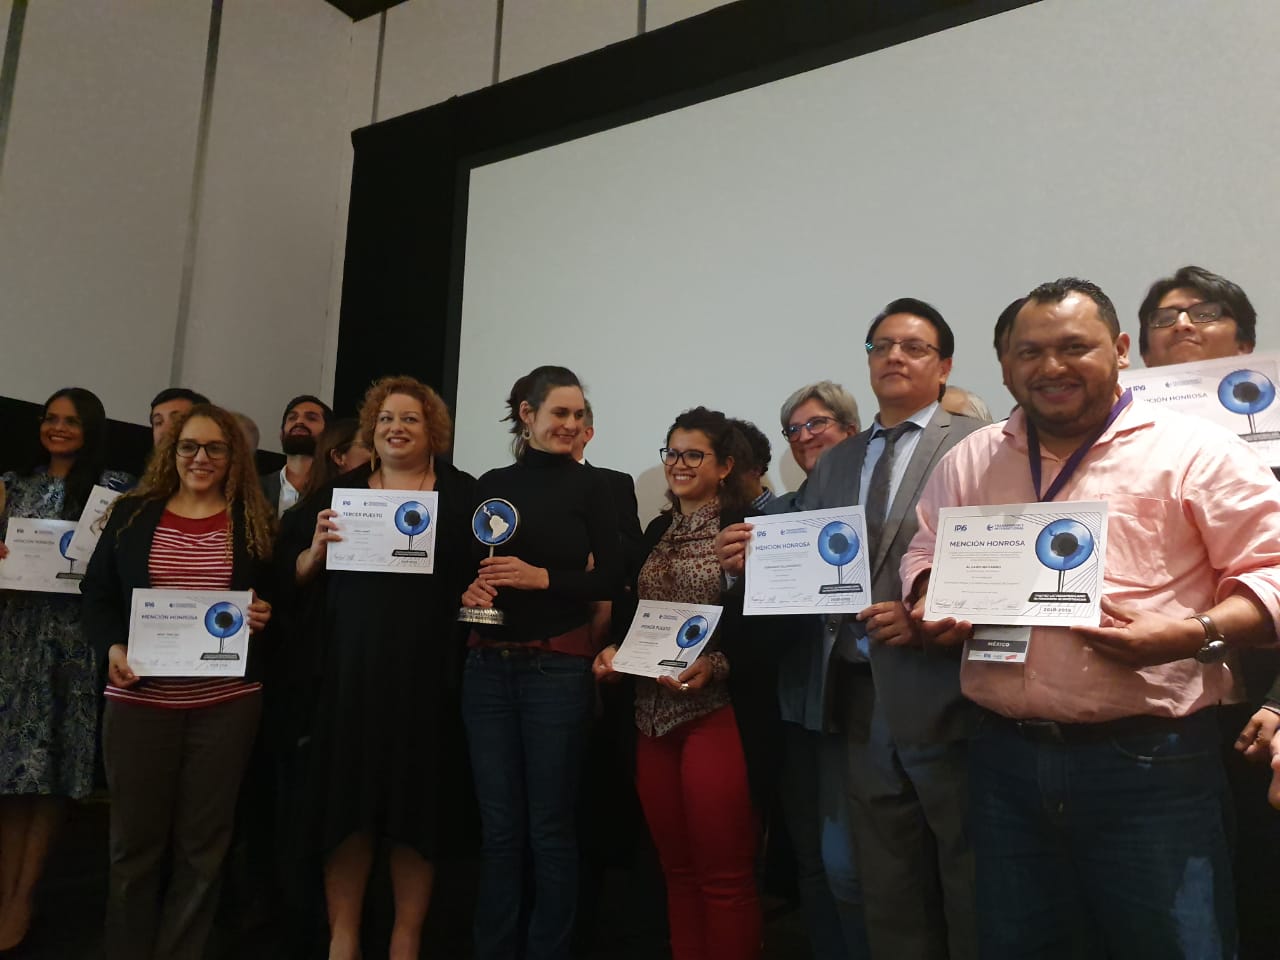 Artículo 66 reconocido con mención honorífica en premio internacional por investigación sobre la ONG de Laureano Ortega